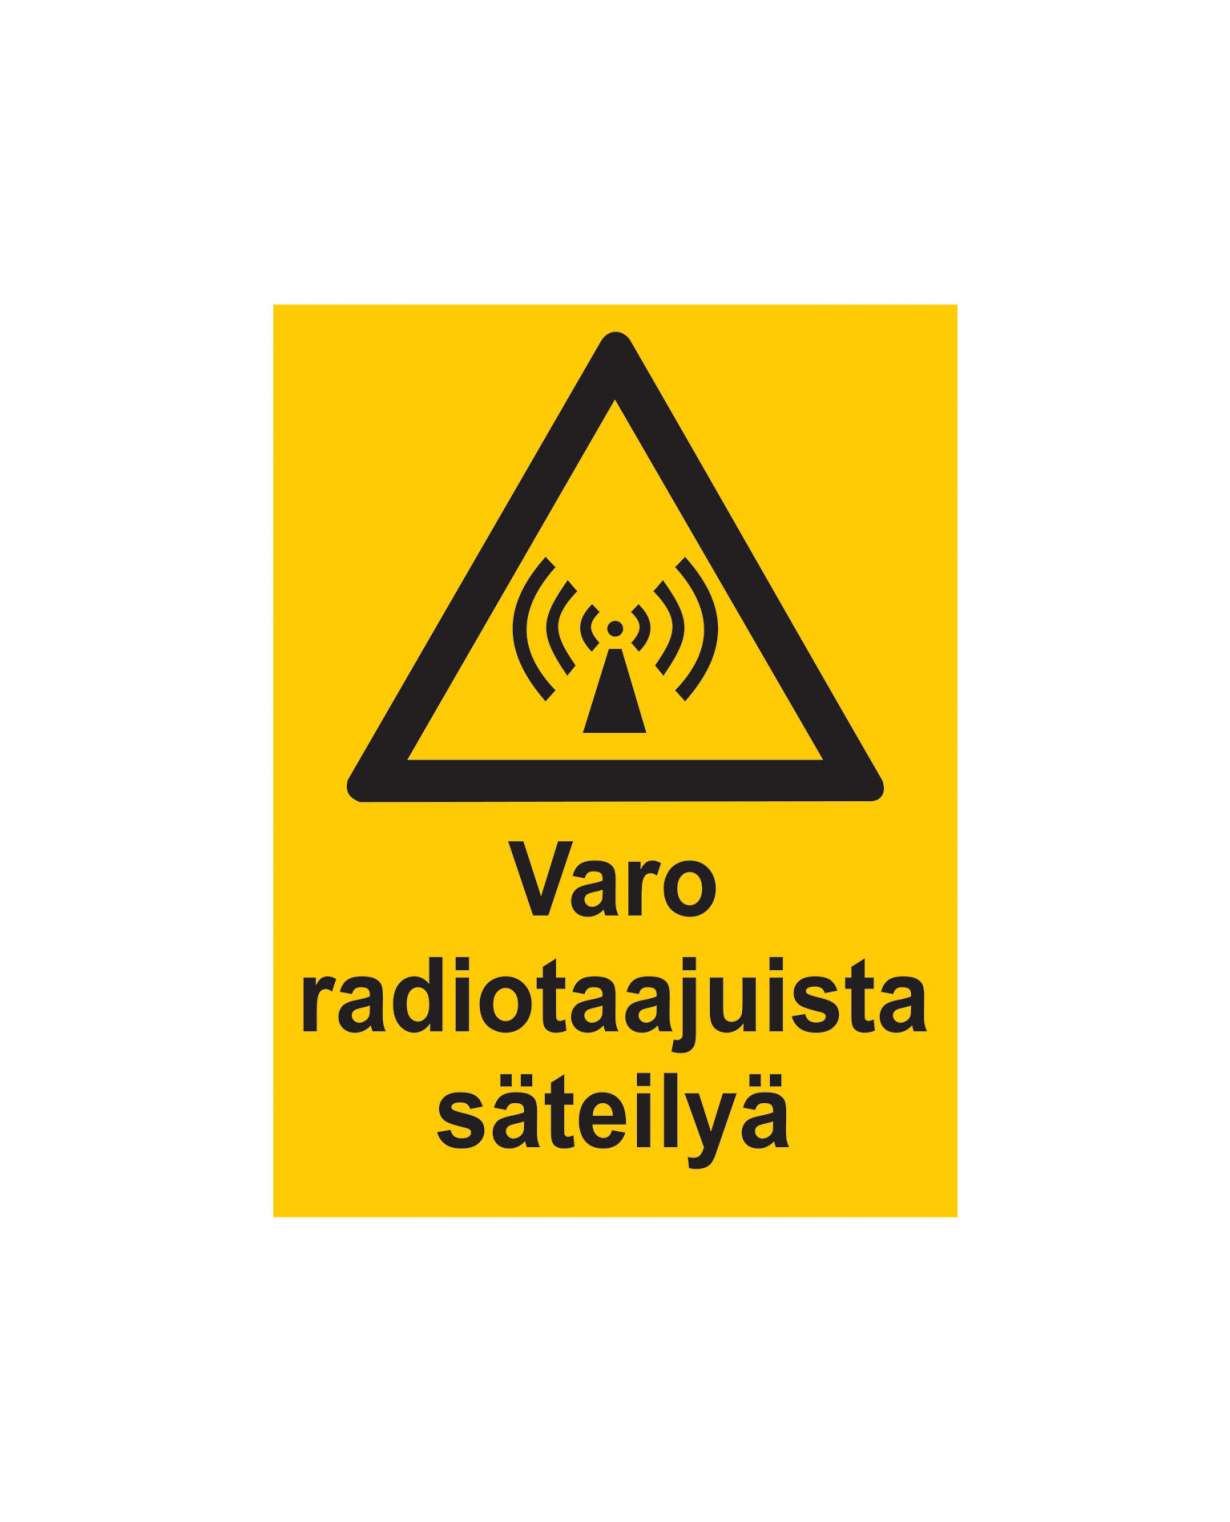 Varo radiotaajuista säteilyä, Ibond alumiini, 200x300 mm